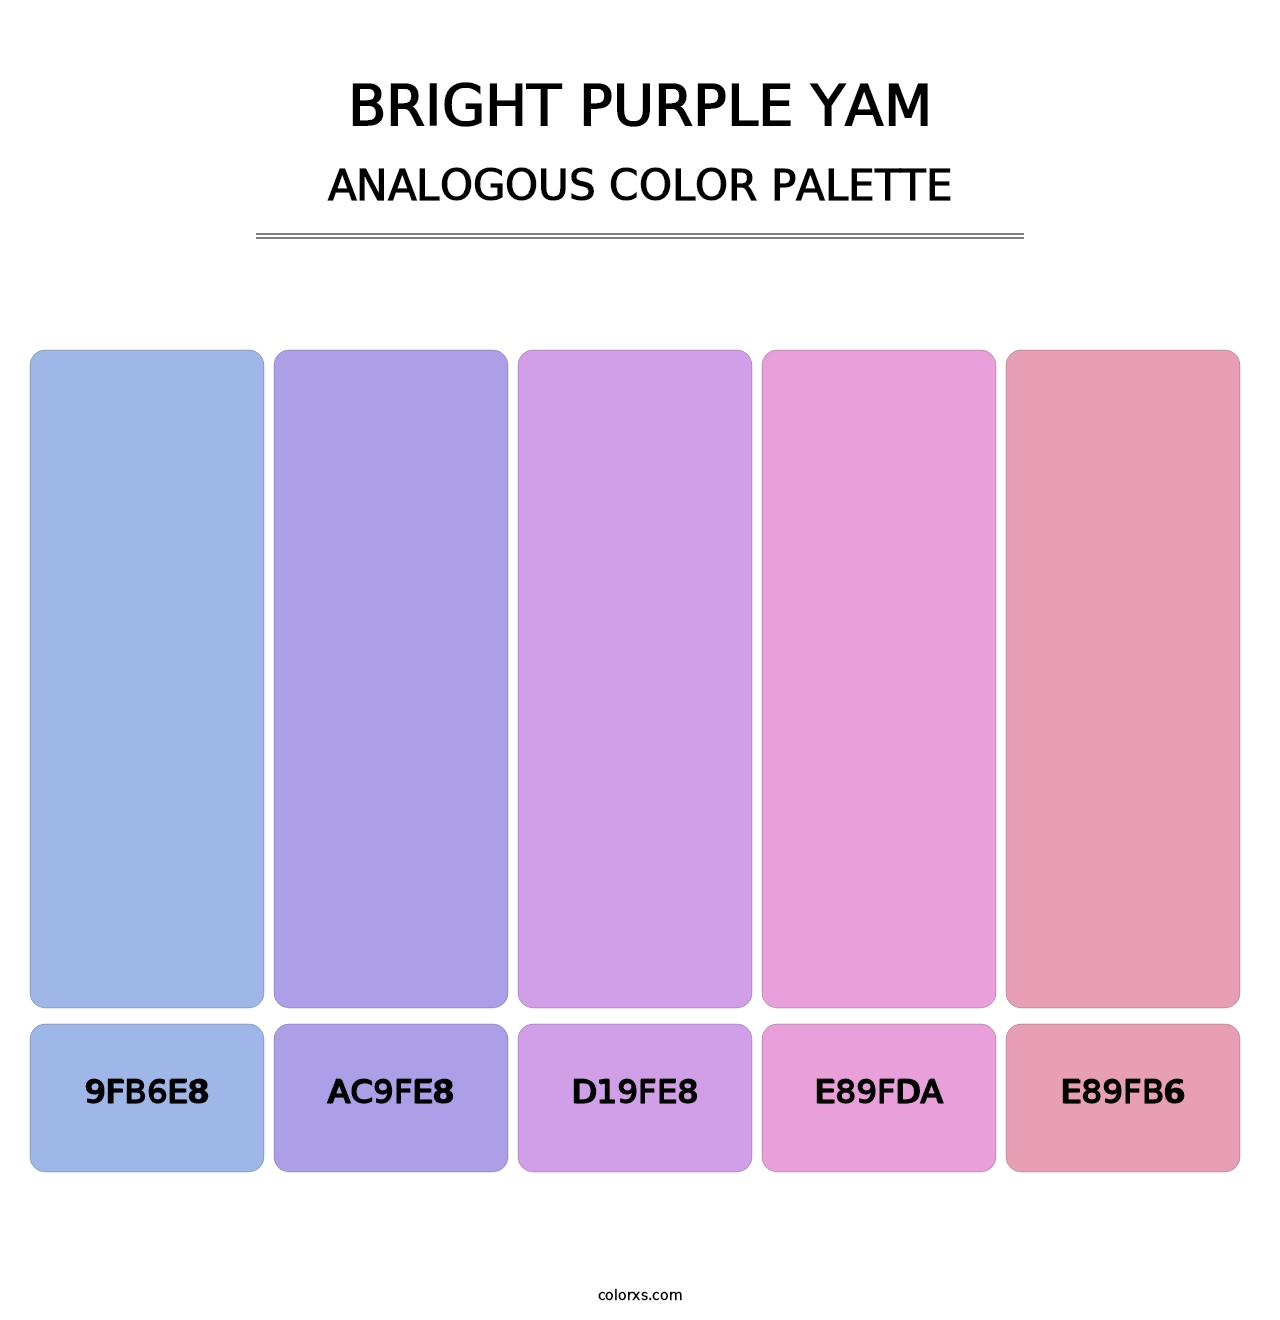 Bright Purple Yam - Analogous Color Palette